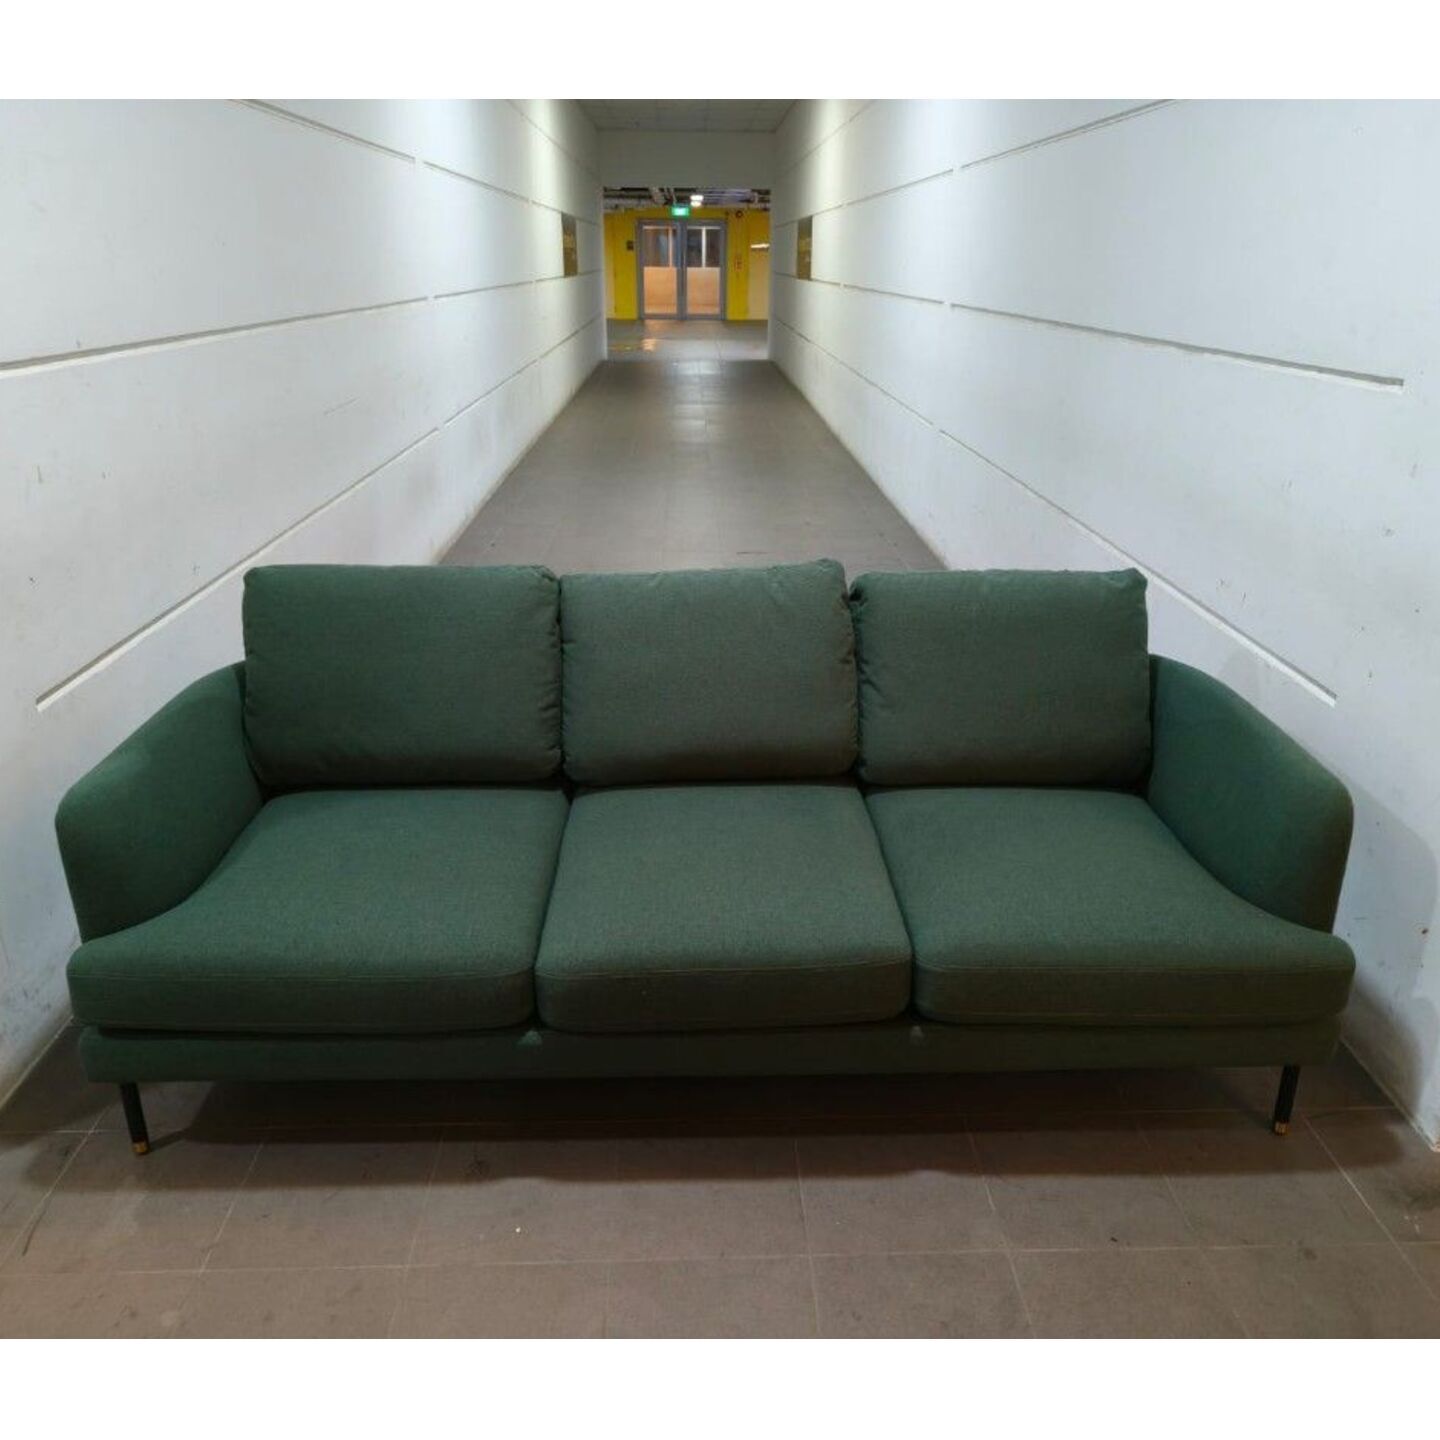 GAESUNG 3 Seater Sofa in GREEN FABRIC